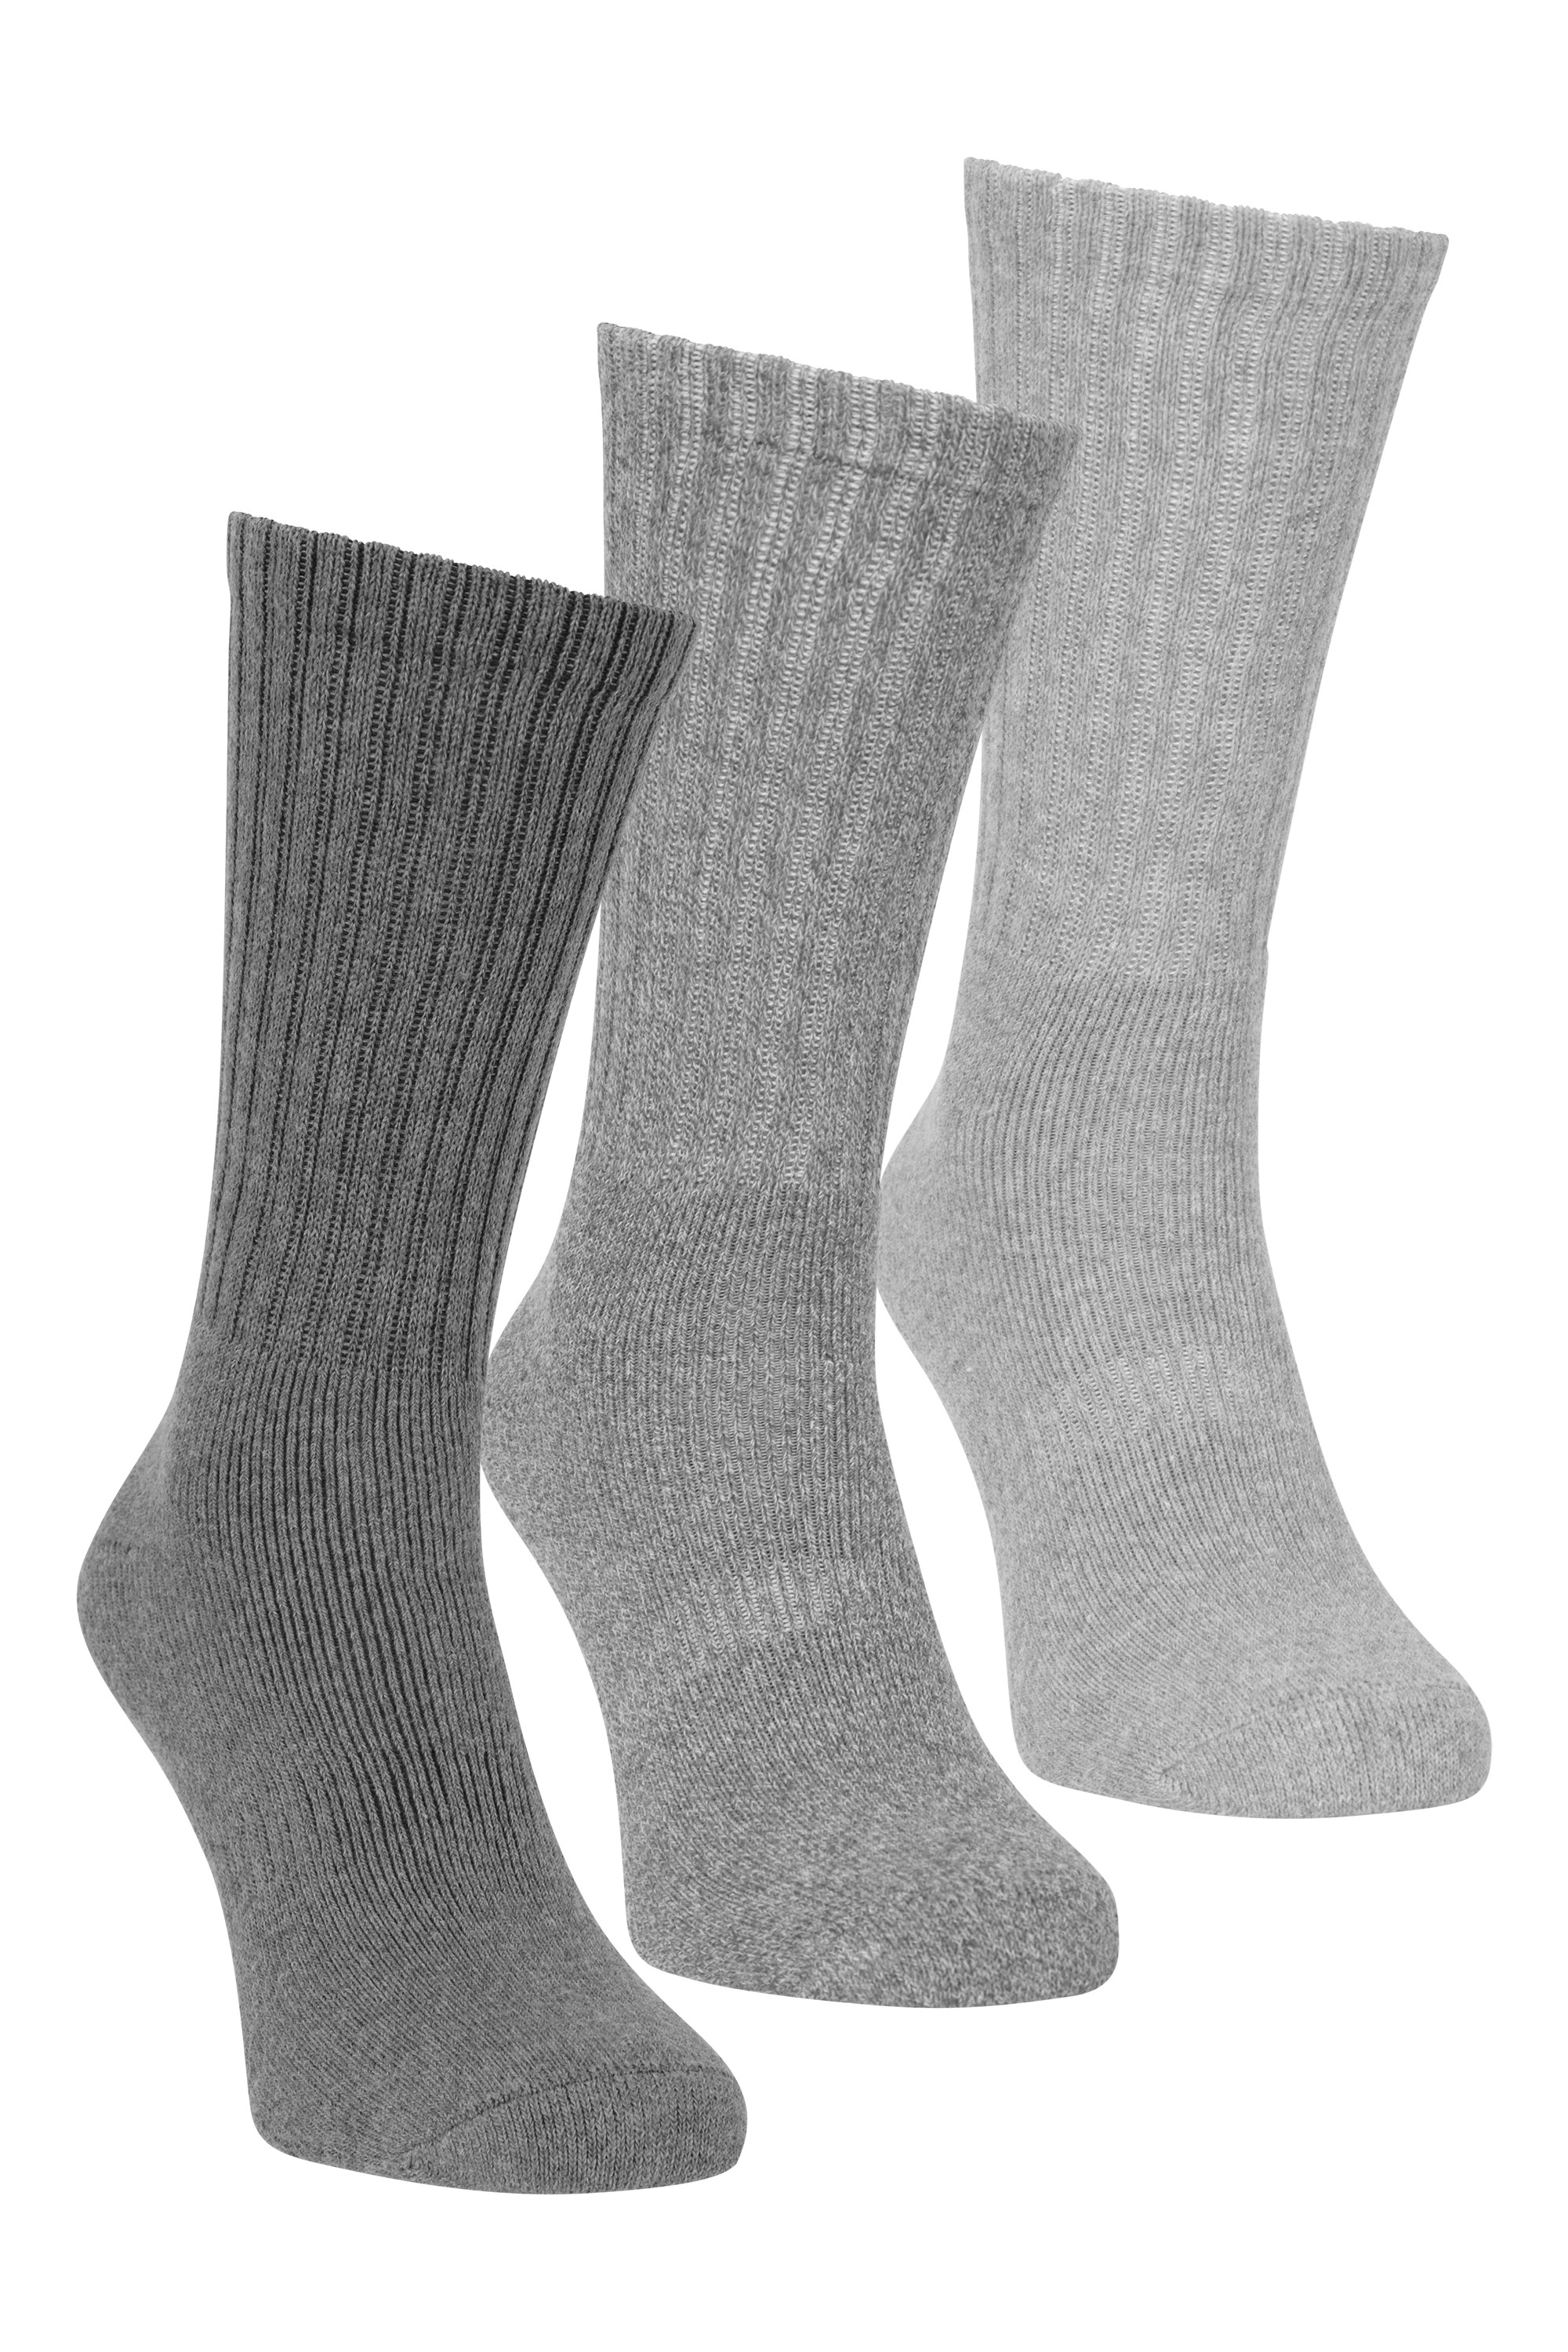 Outdoor Mens Walking Socks 3-pack - Grey